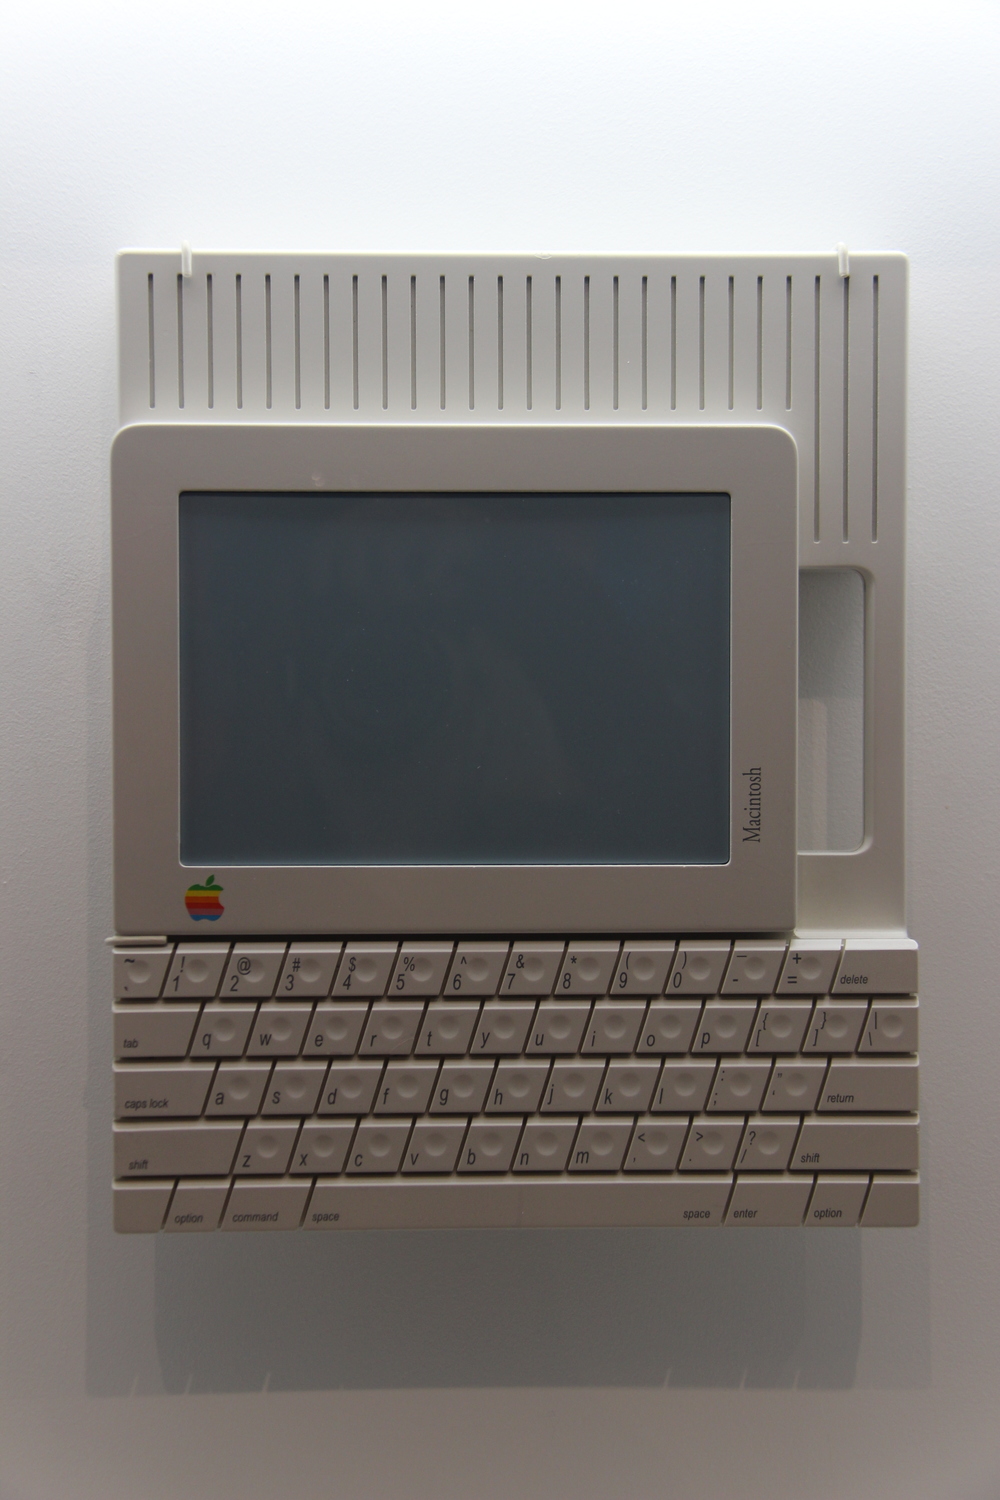 1984 Macintosh prototype